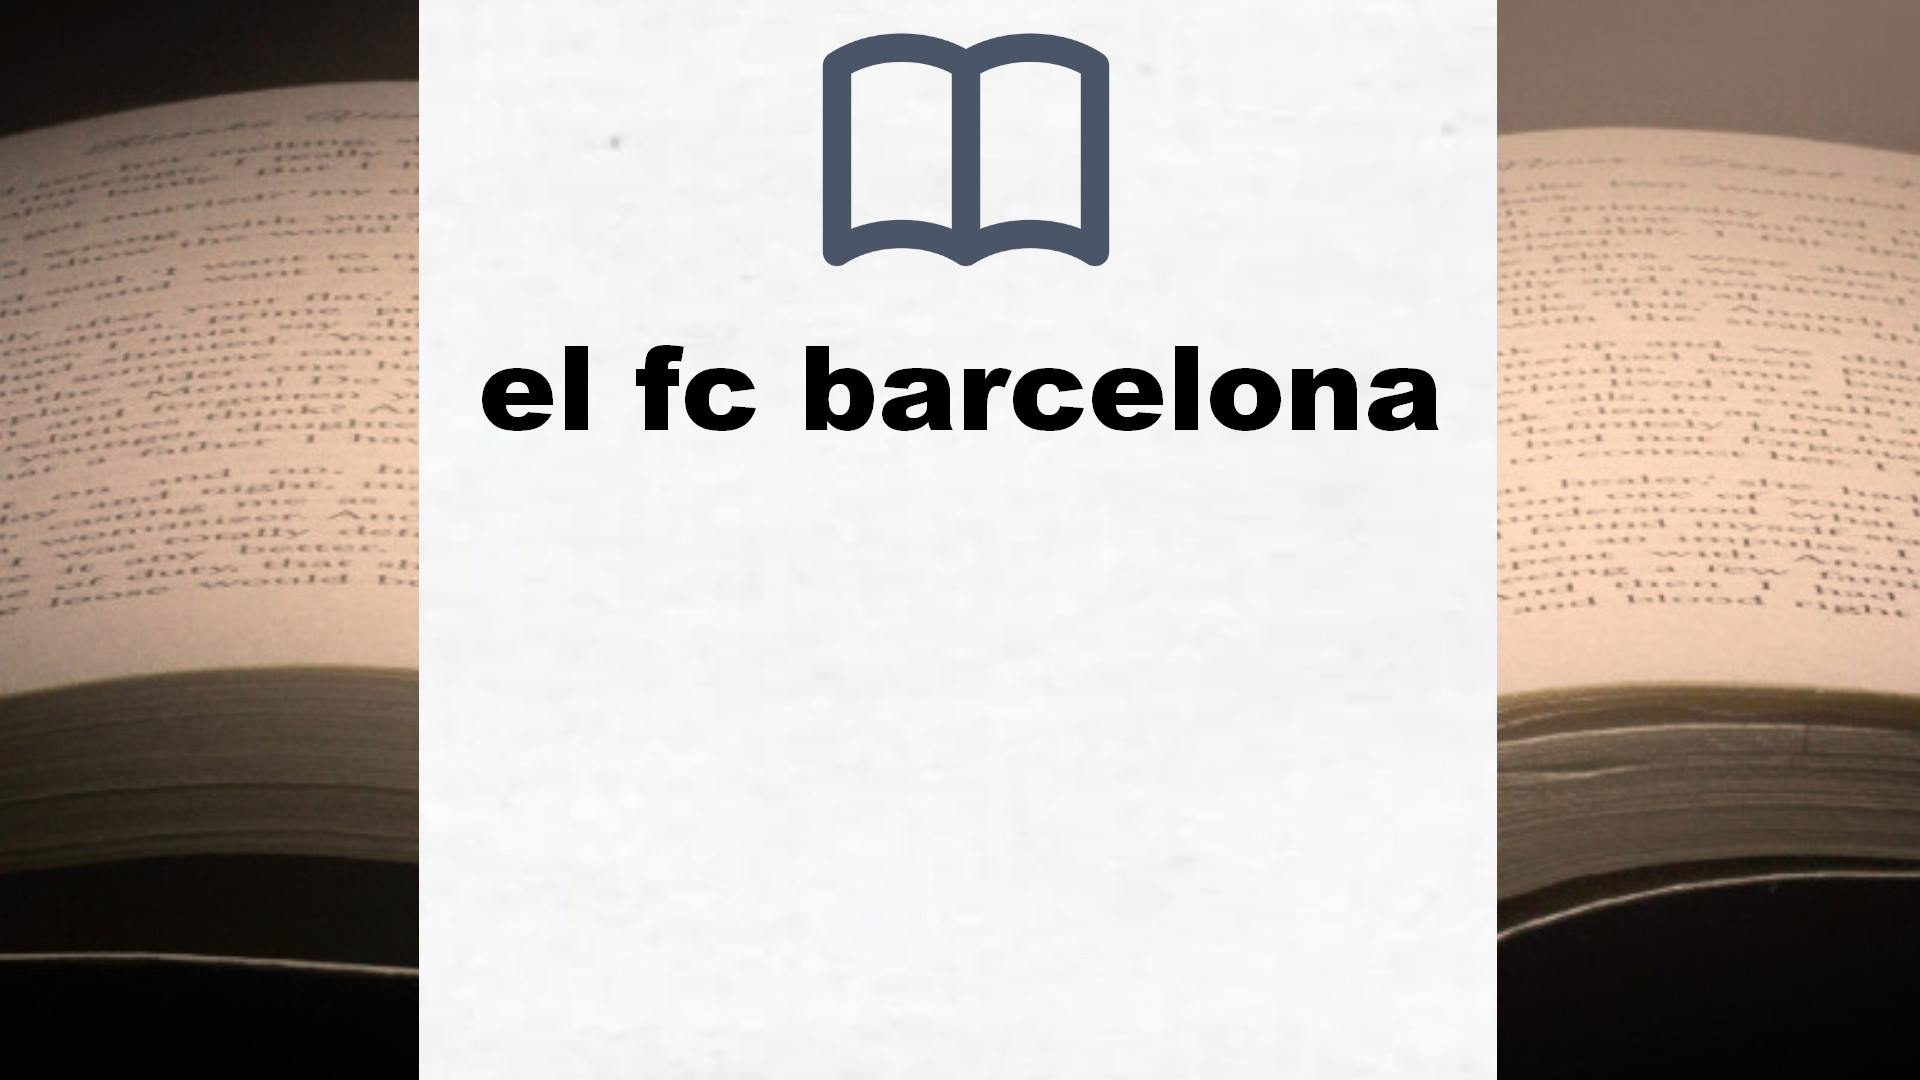 Libros sobre el fc barcelona